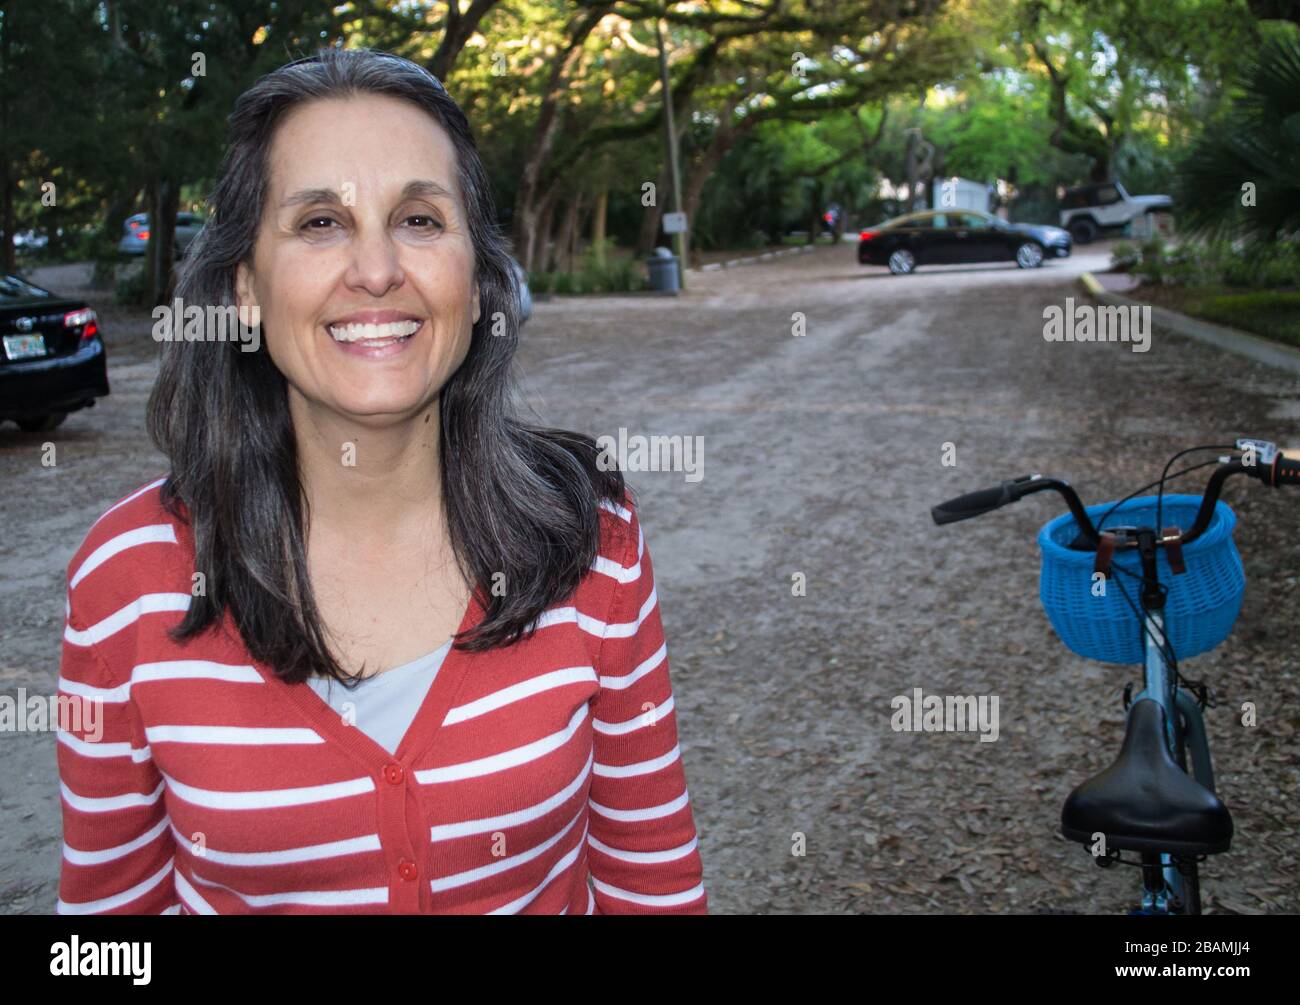 La donna sorridente si riposa dal suo giro in bicicletta Foto Stock